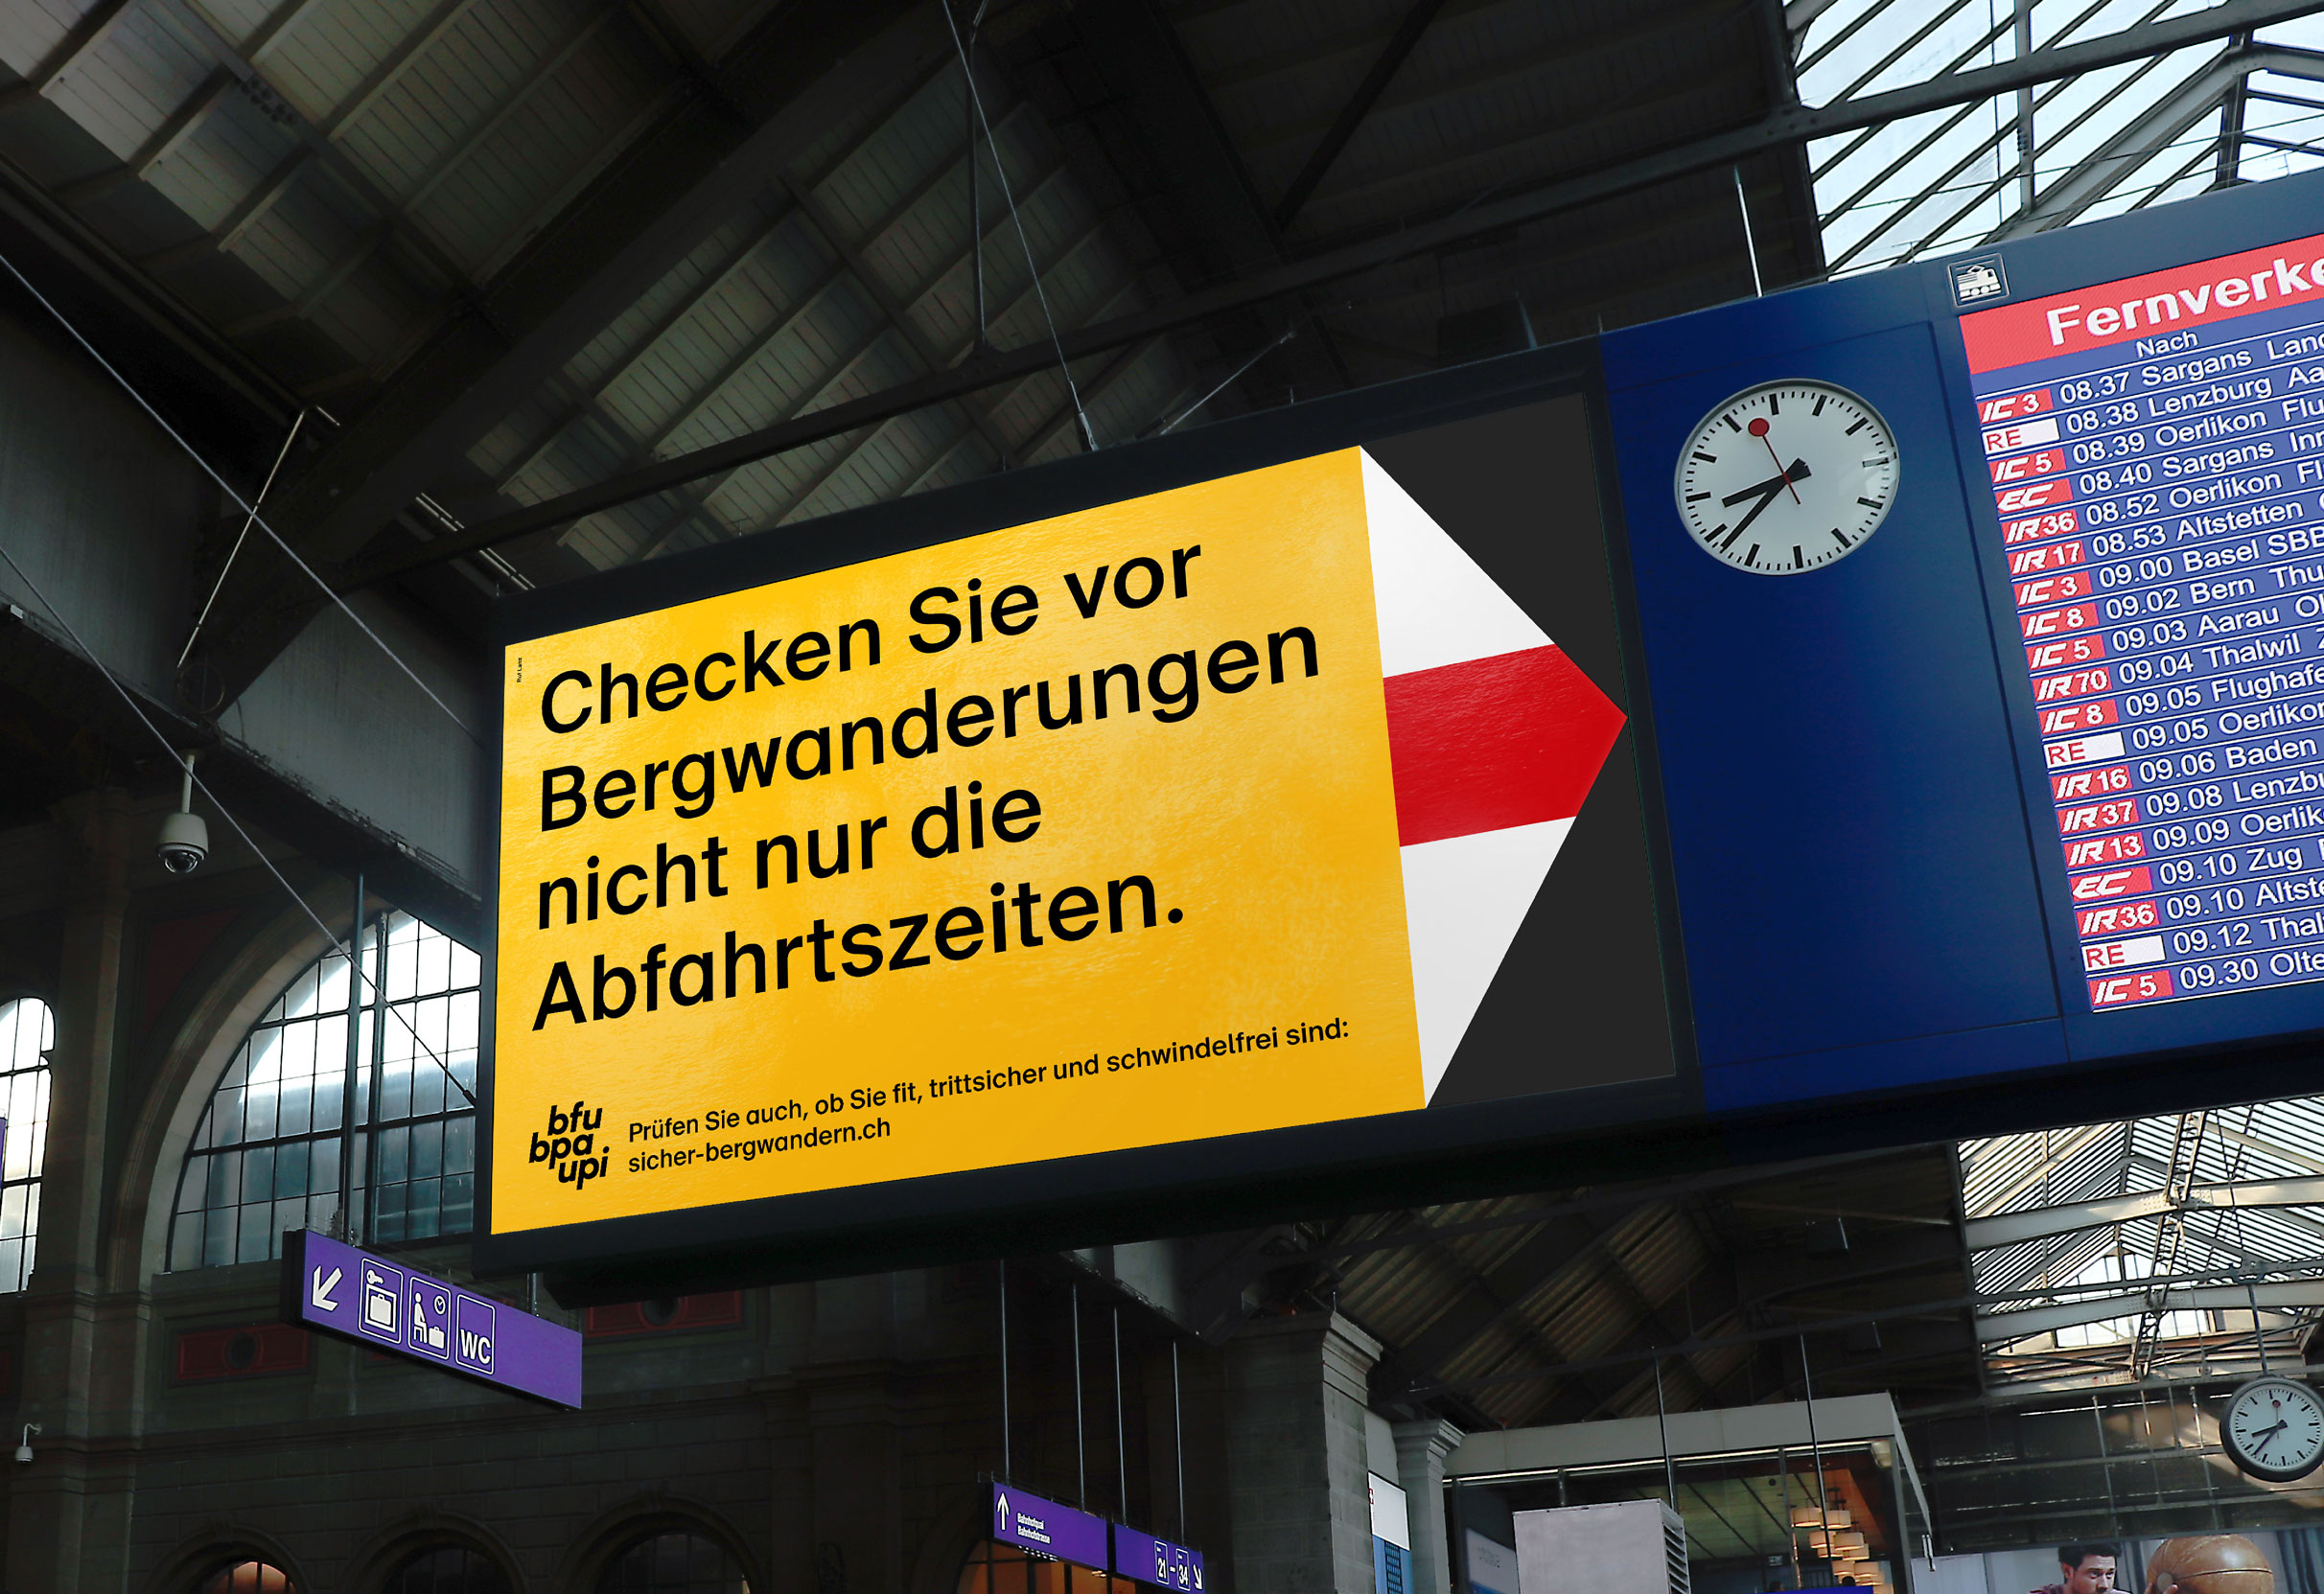 Übergrosser Bergwanderweg der im Zürcher Hauptbahnhof auf die Abfahrtsanzeige gerichtet ist: Checken Sie vor Bergwanderungen nicht nur die Abfahrtszeiten.